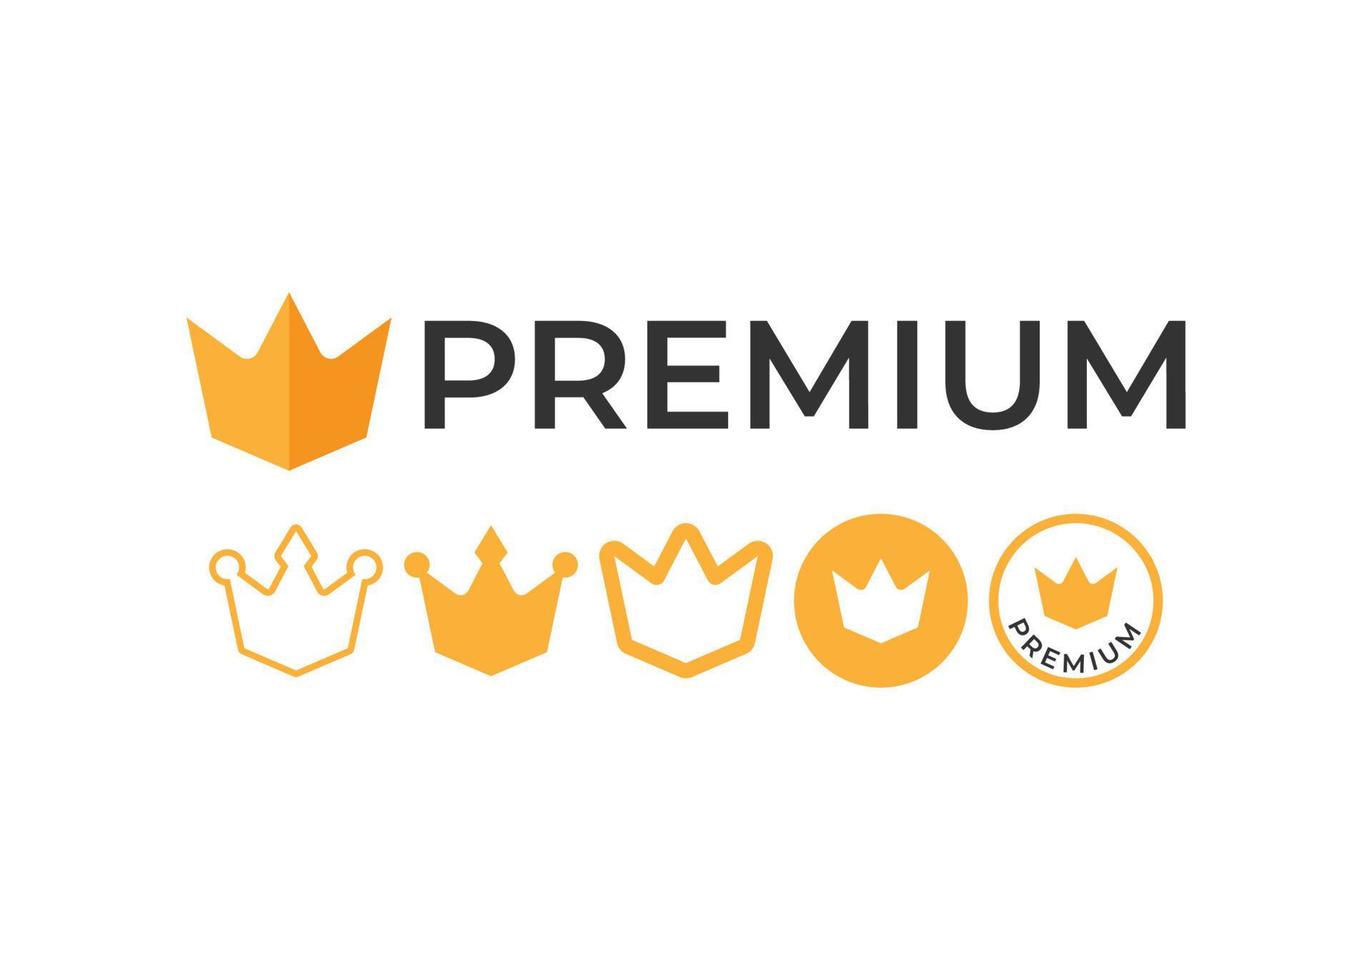 Premium icon symbol set vector